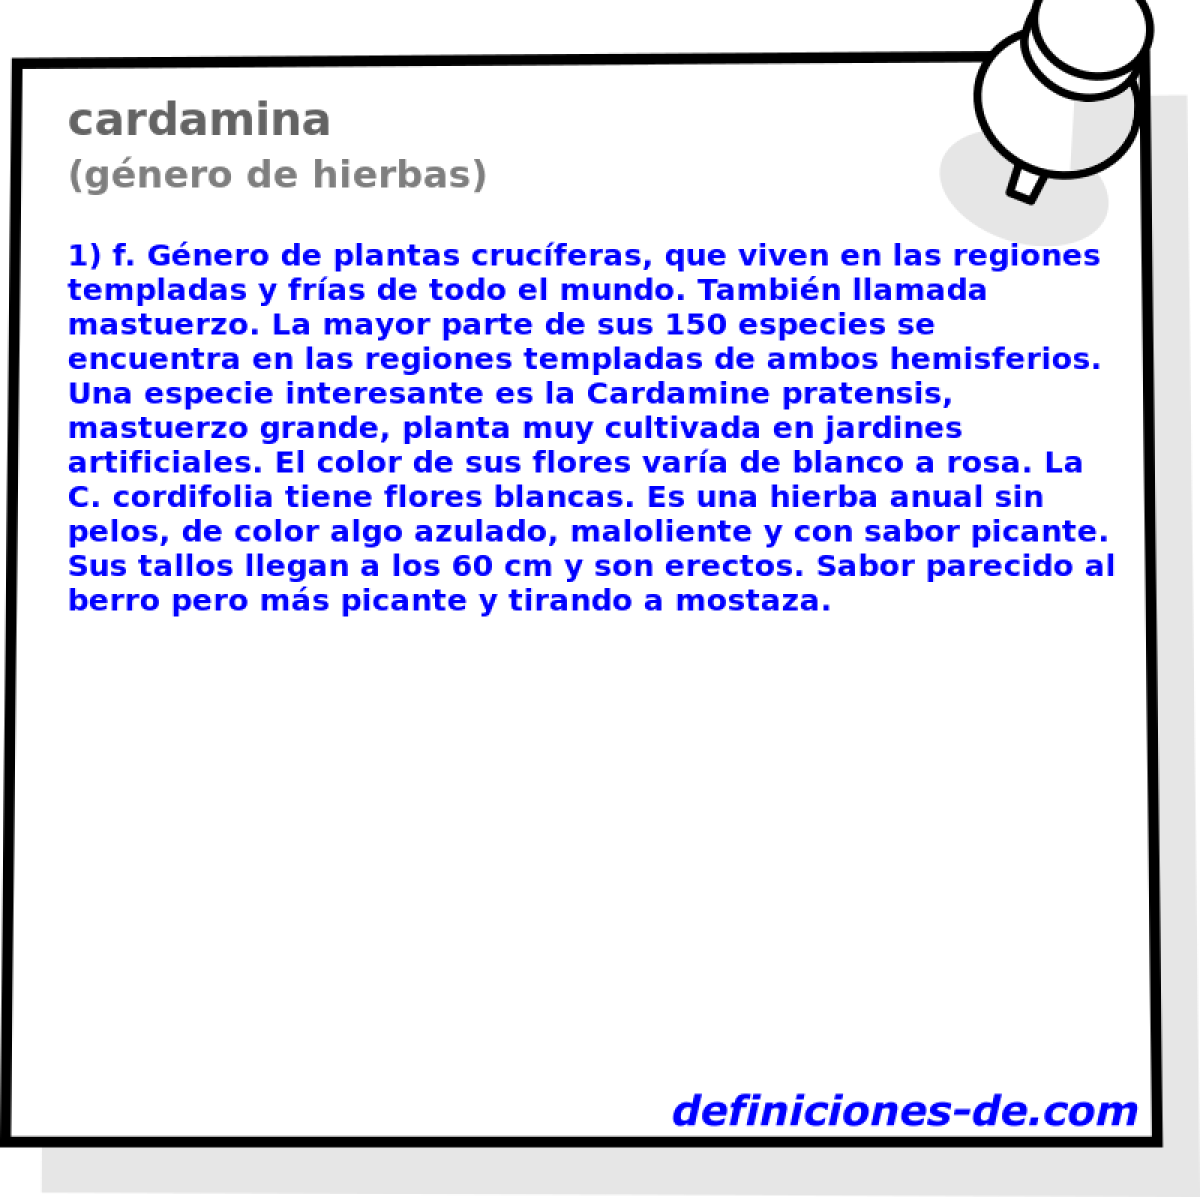 Cardamina (género de hierbas) Significado de cardamina